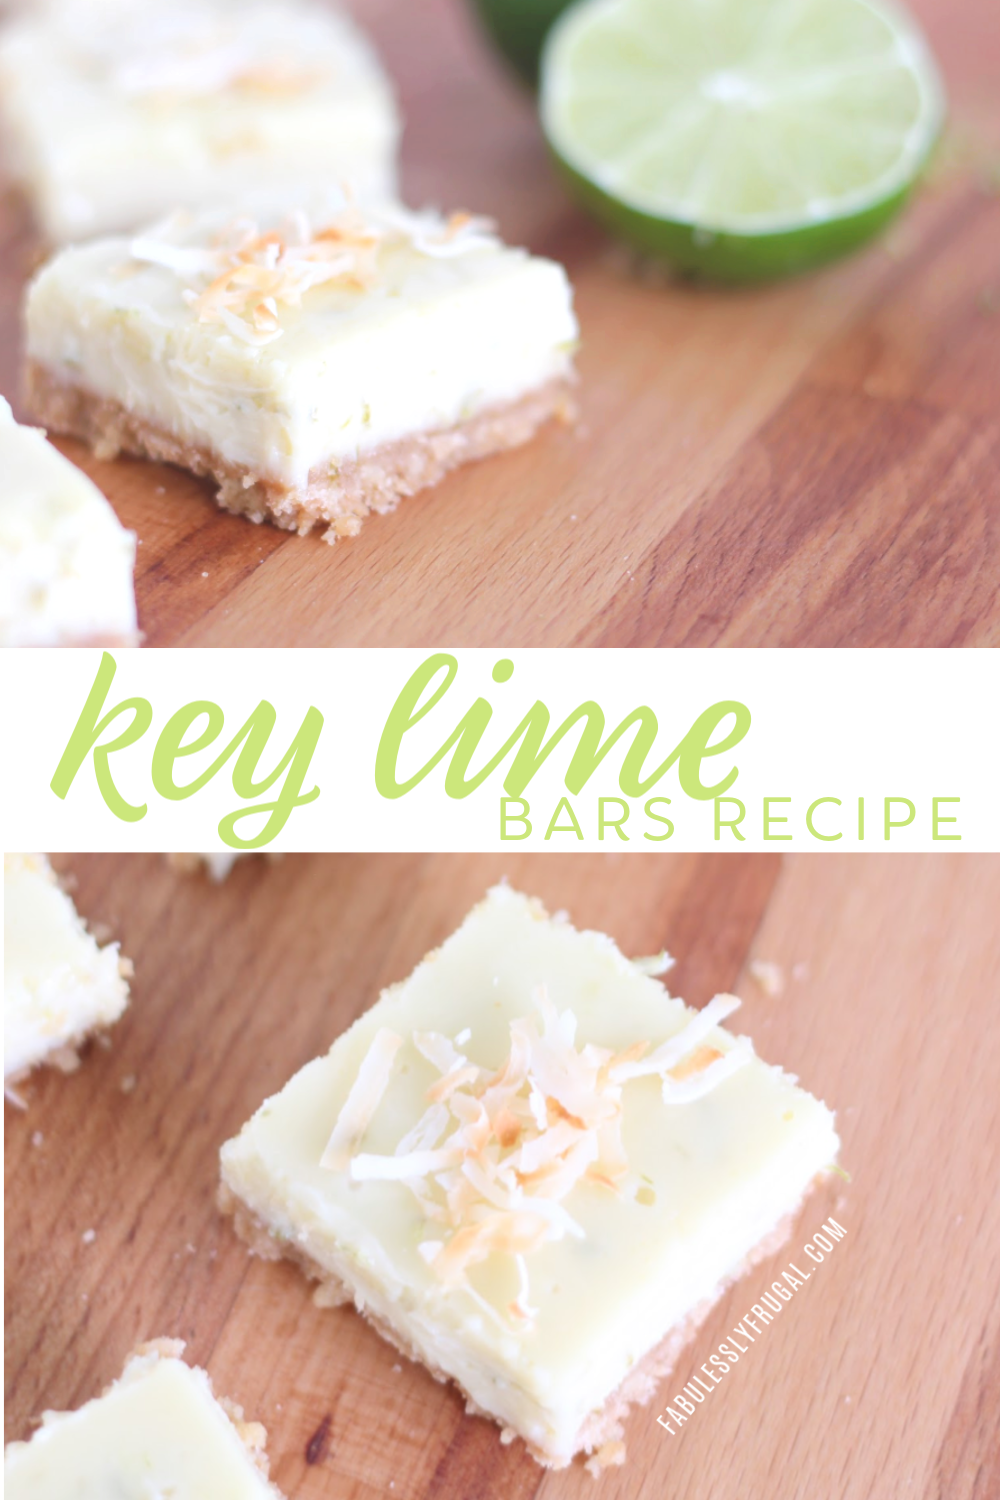 Key lime bars recipe